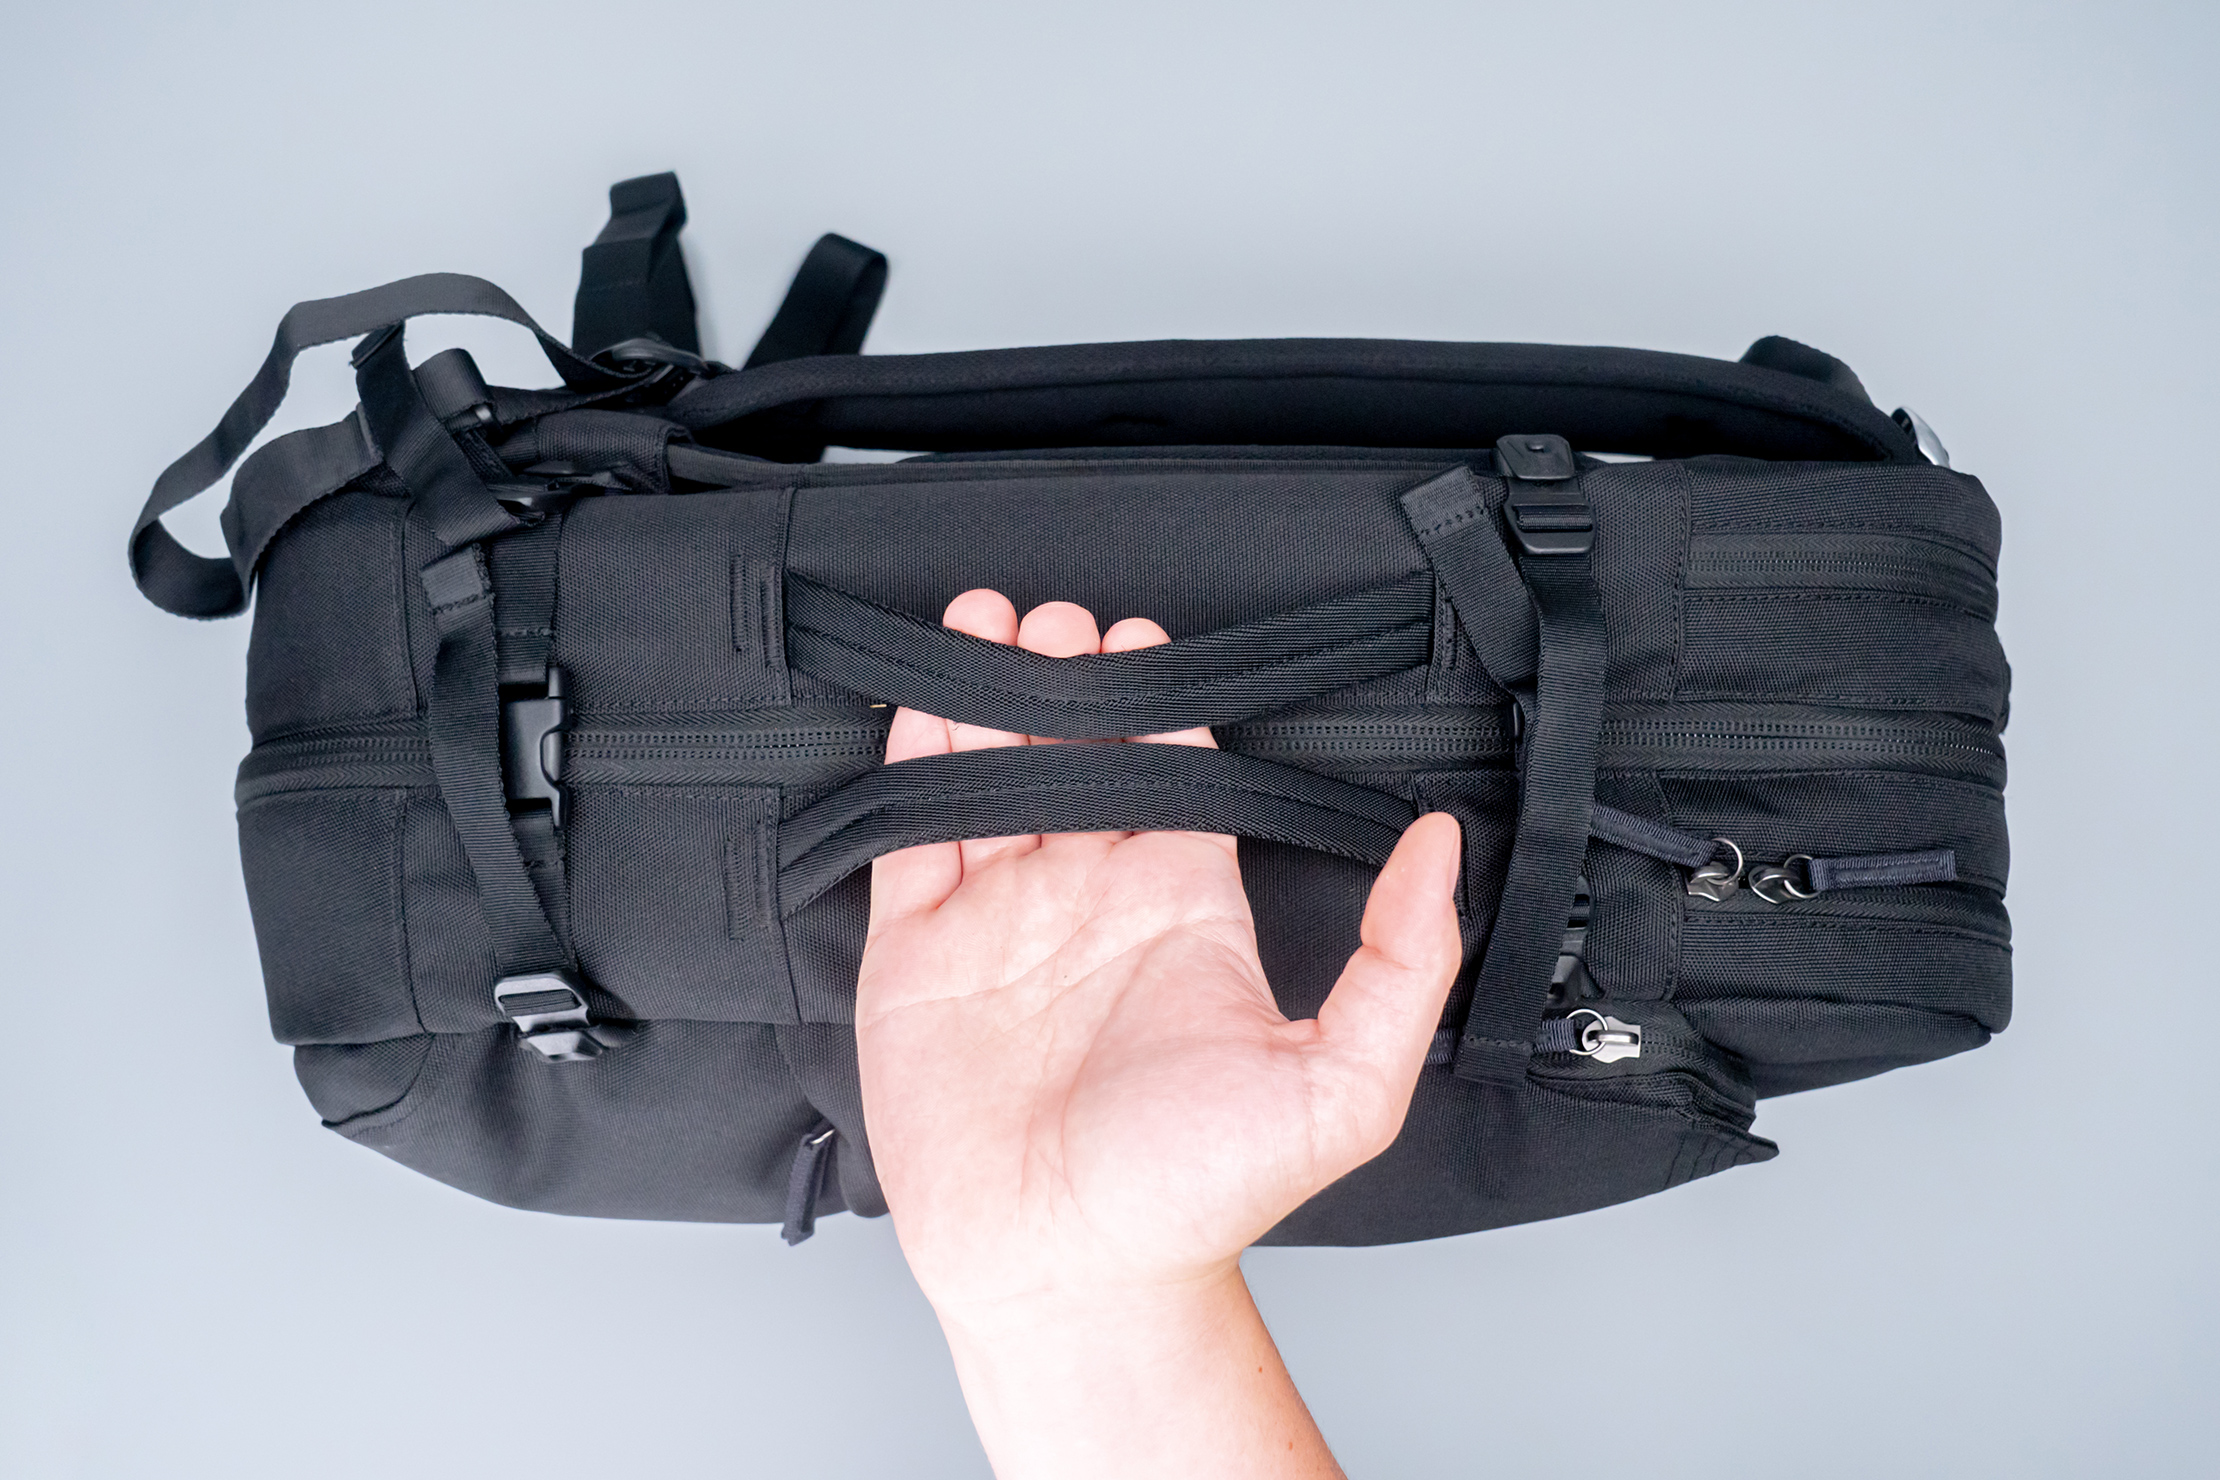 Pakt Travel Backpack Dual Side Handles